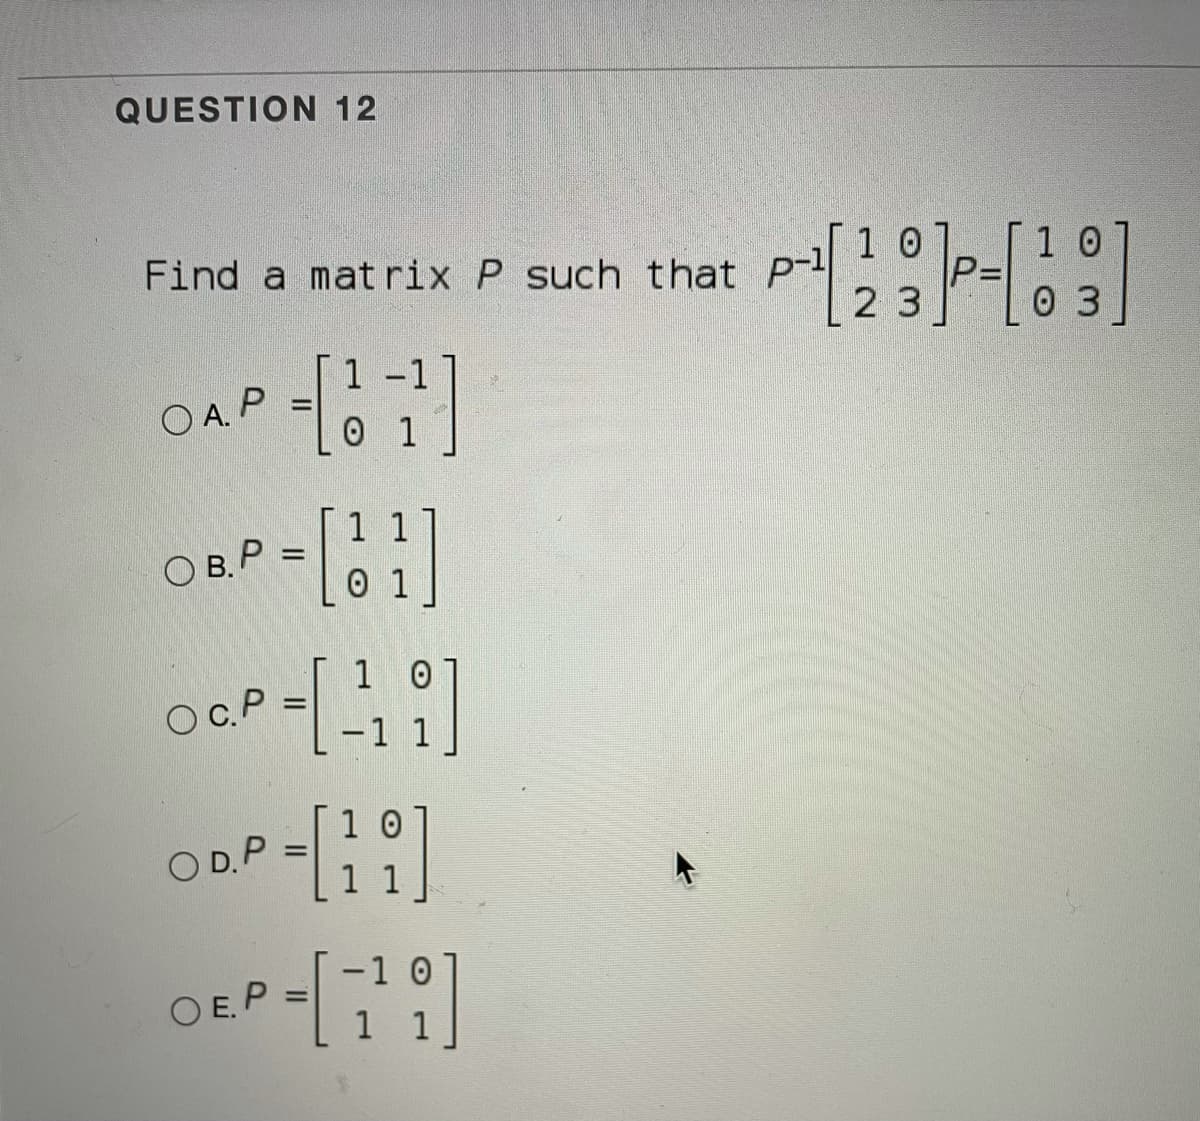 QUESTION 12
Find a matrix P such that P
1 0
2 3
0 3
1-1
O A. P
0 1
1 1
O B. P =
0 1
1 0
OC.P
-1 1
1 0
O D.P
-1 0
O E.P
%3D
1 1
